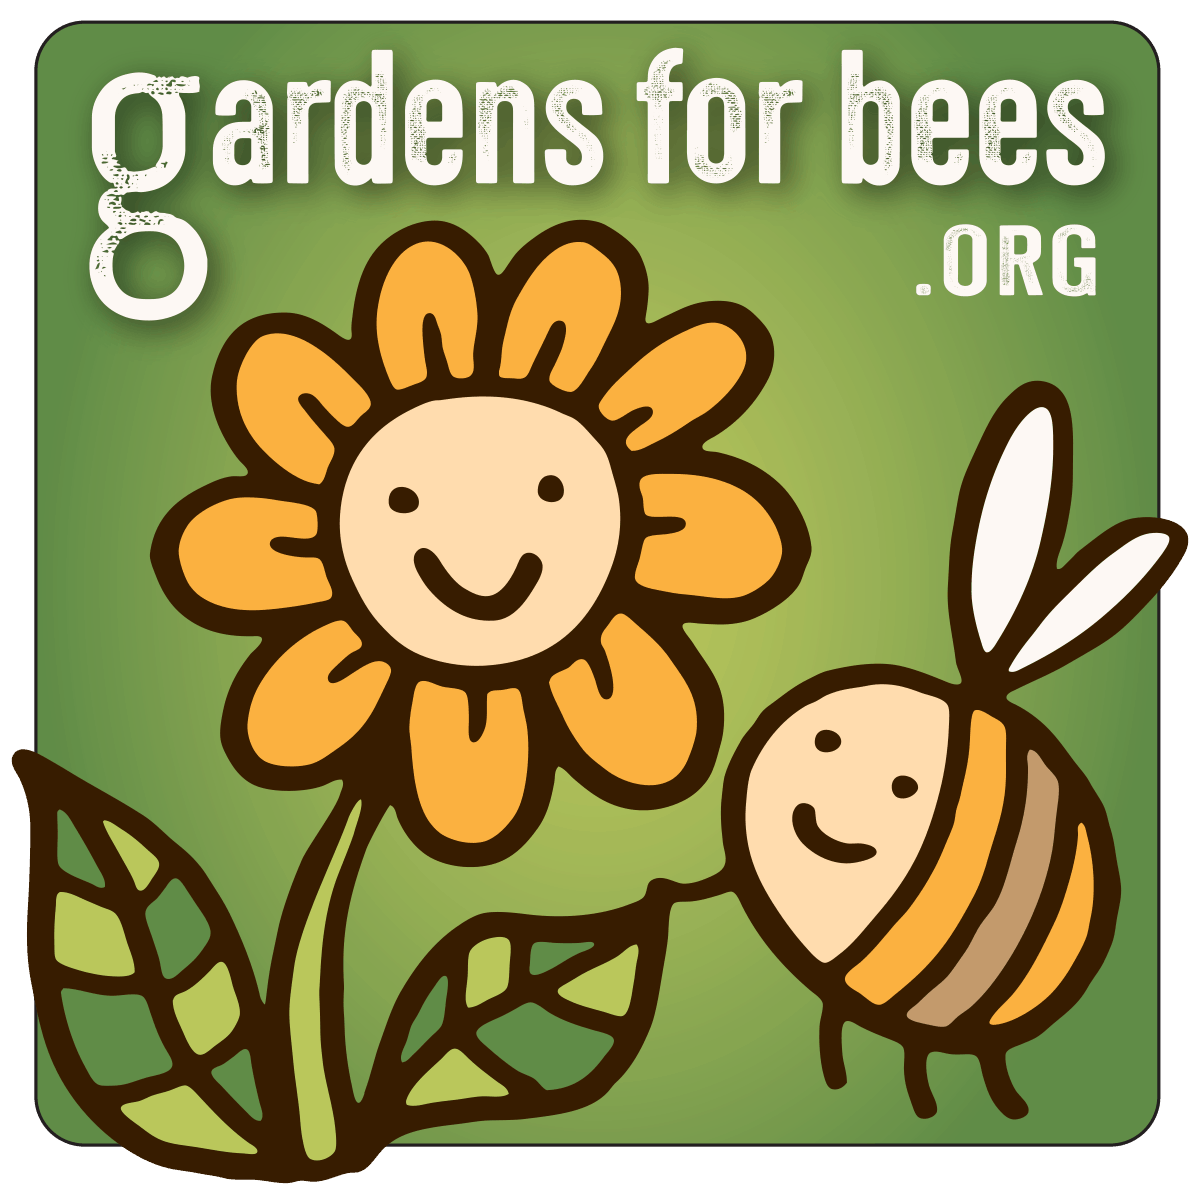 gardens for bees logo